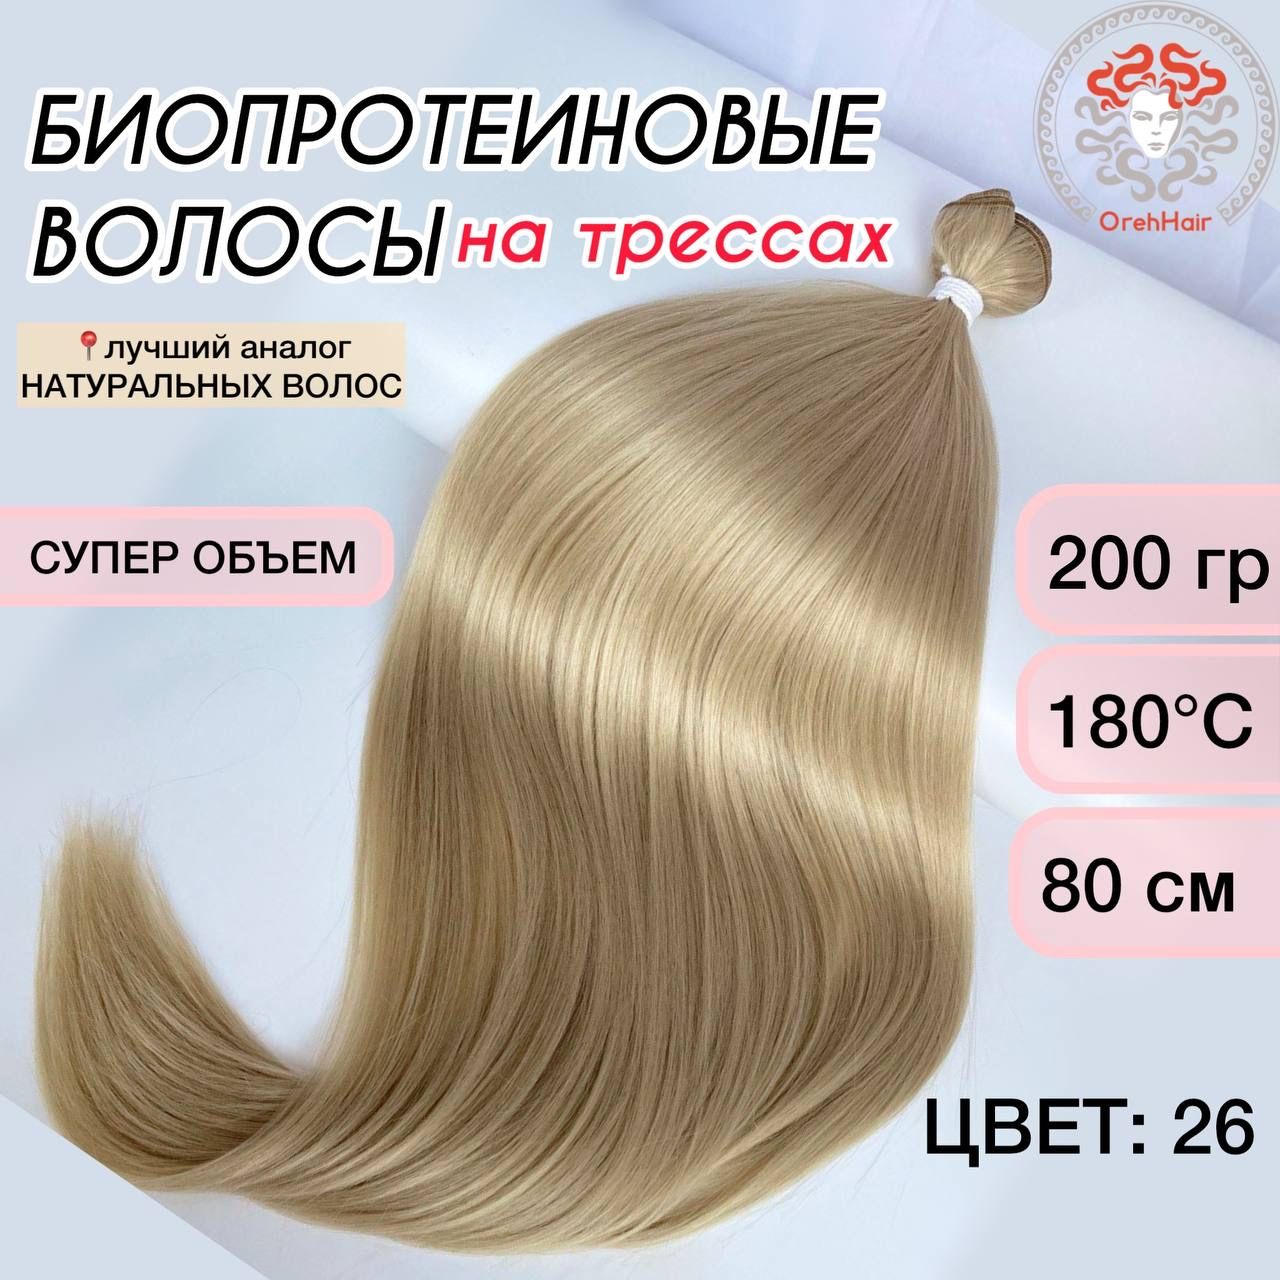 Стрижка длинных натуральных волос в фирменном салоне красоты Estel: отзыв, до и после, фото